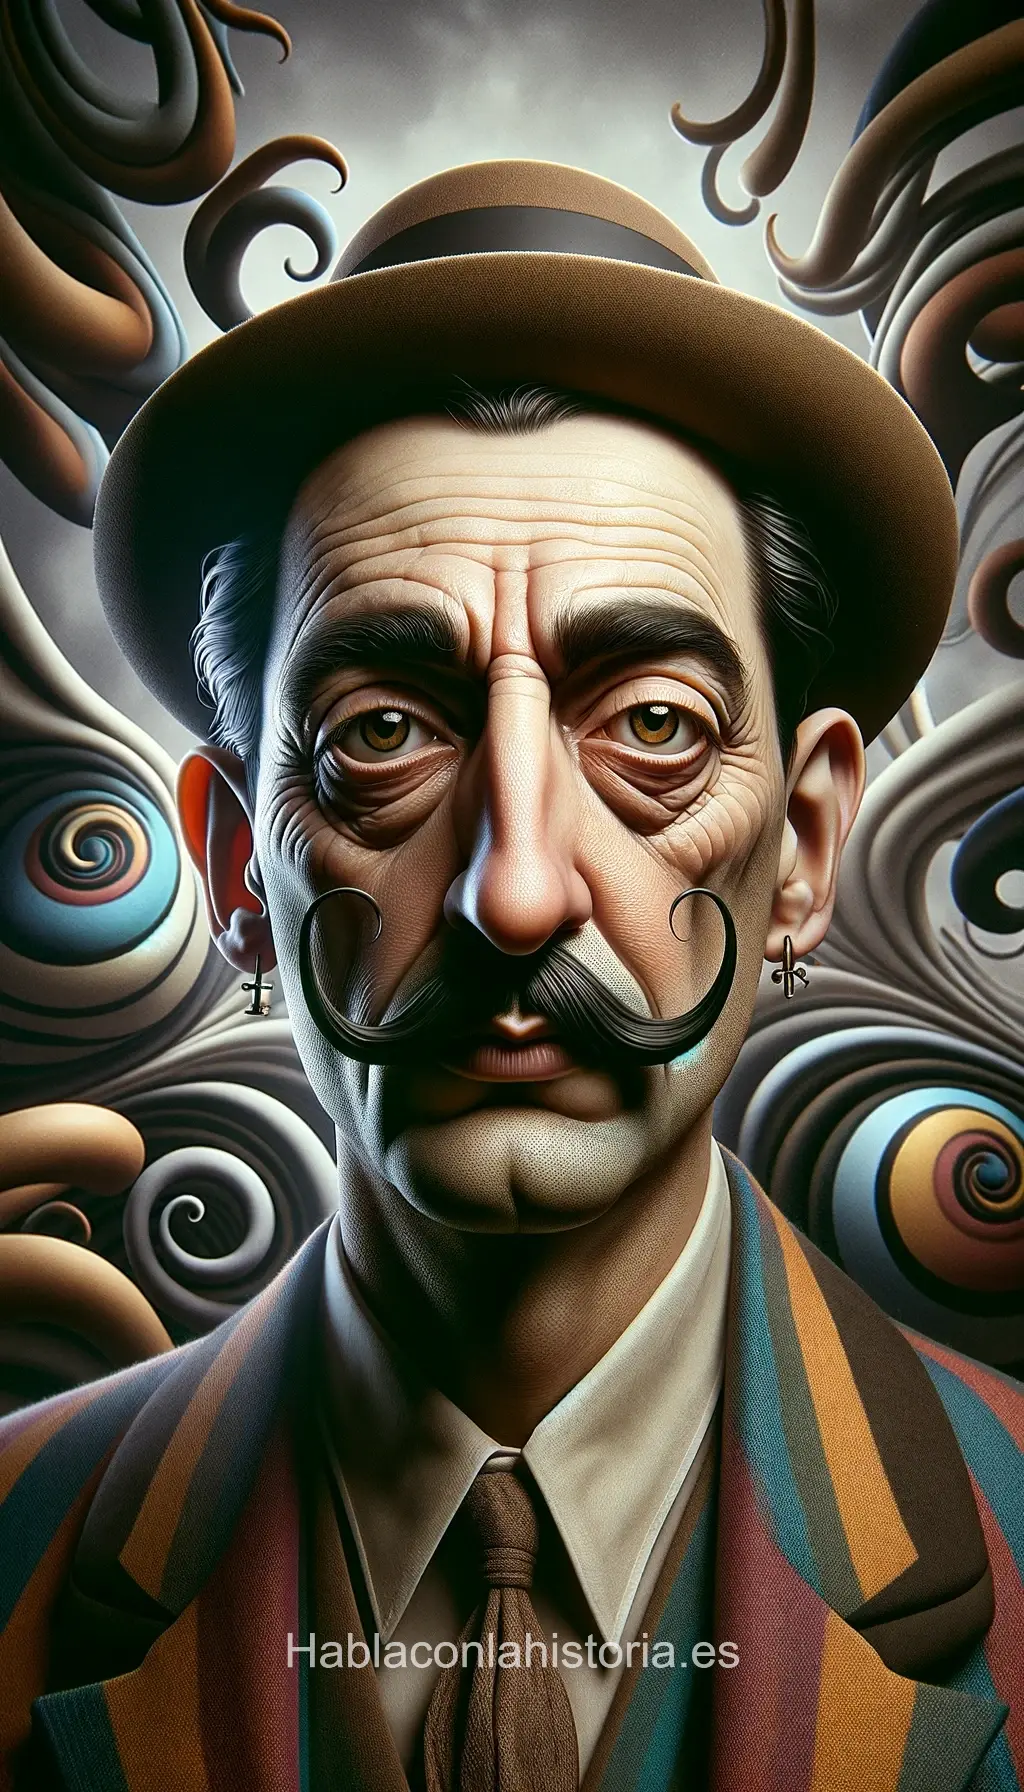 Imagen realista de Salvador Dalí, pintor surrealista español, creada por IA. Contiene citas famosas, interacción de chat IA y tareas de aprendizaje artístico.